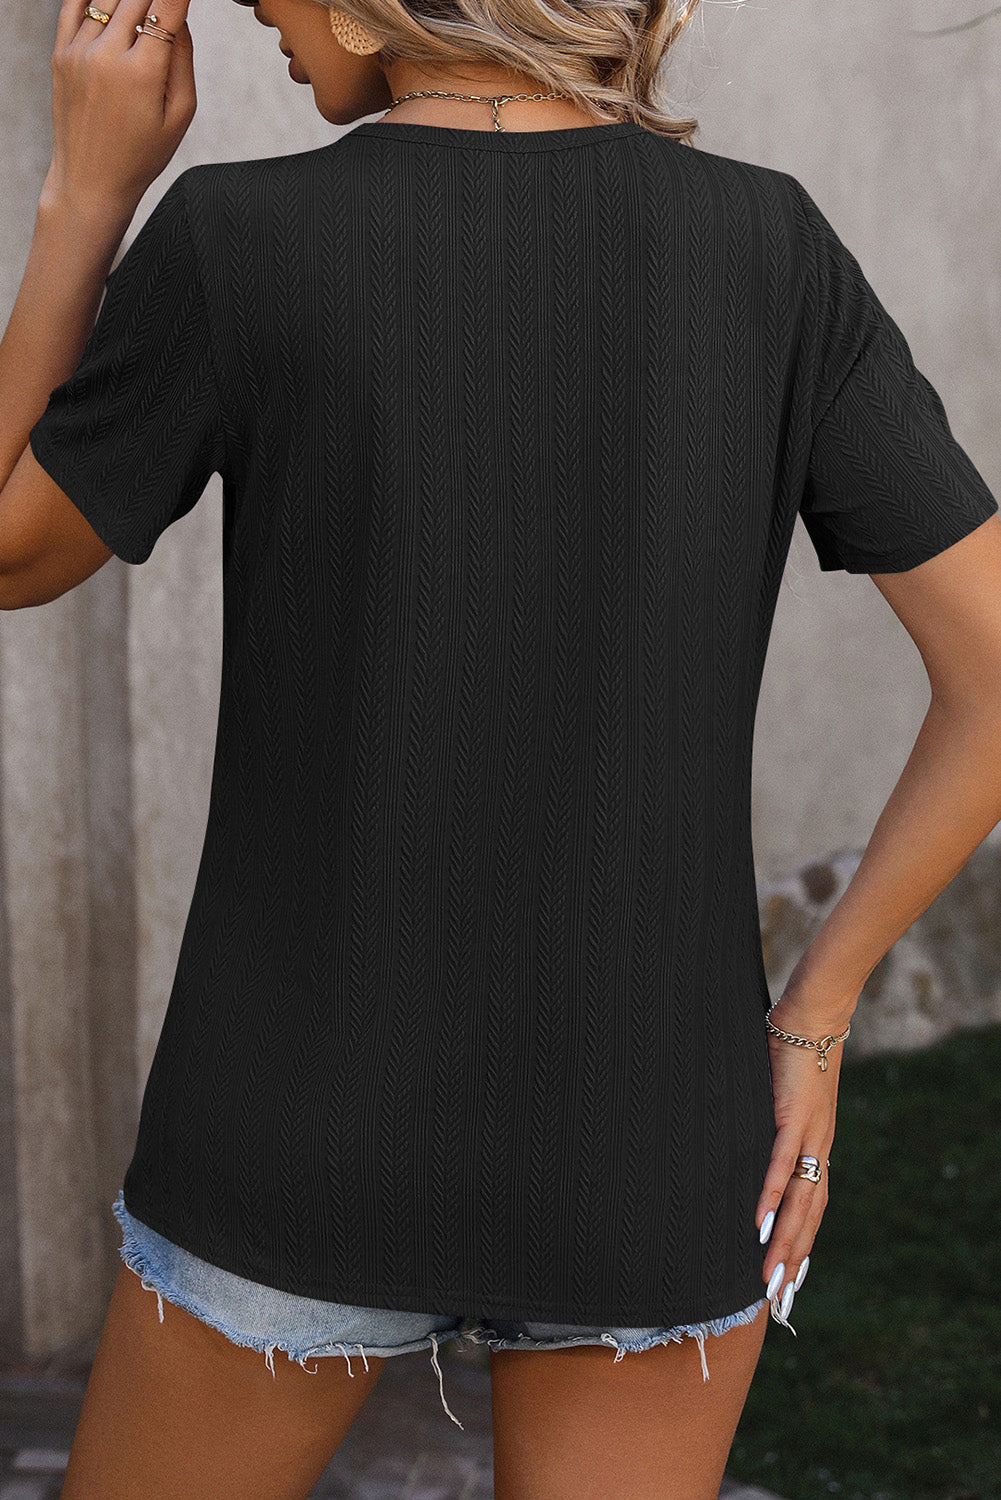 Crna modna teksturirana majica s prorezima s gumbima